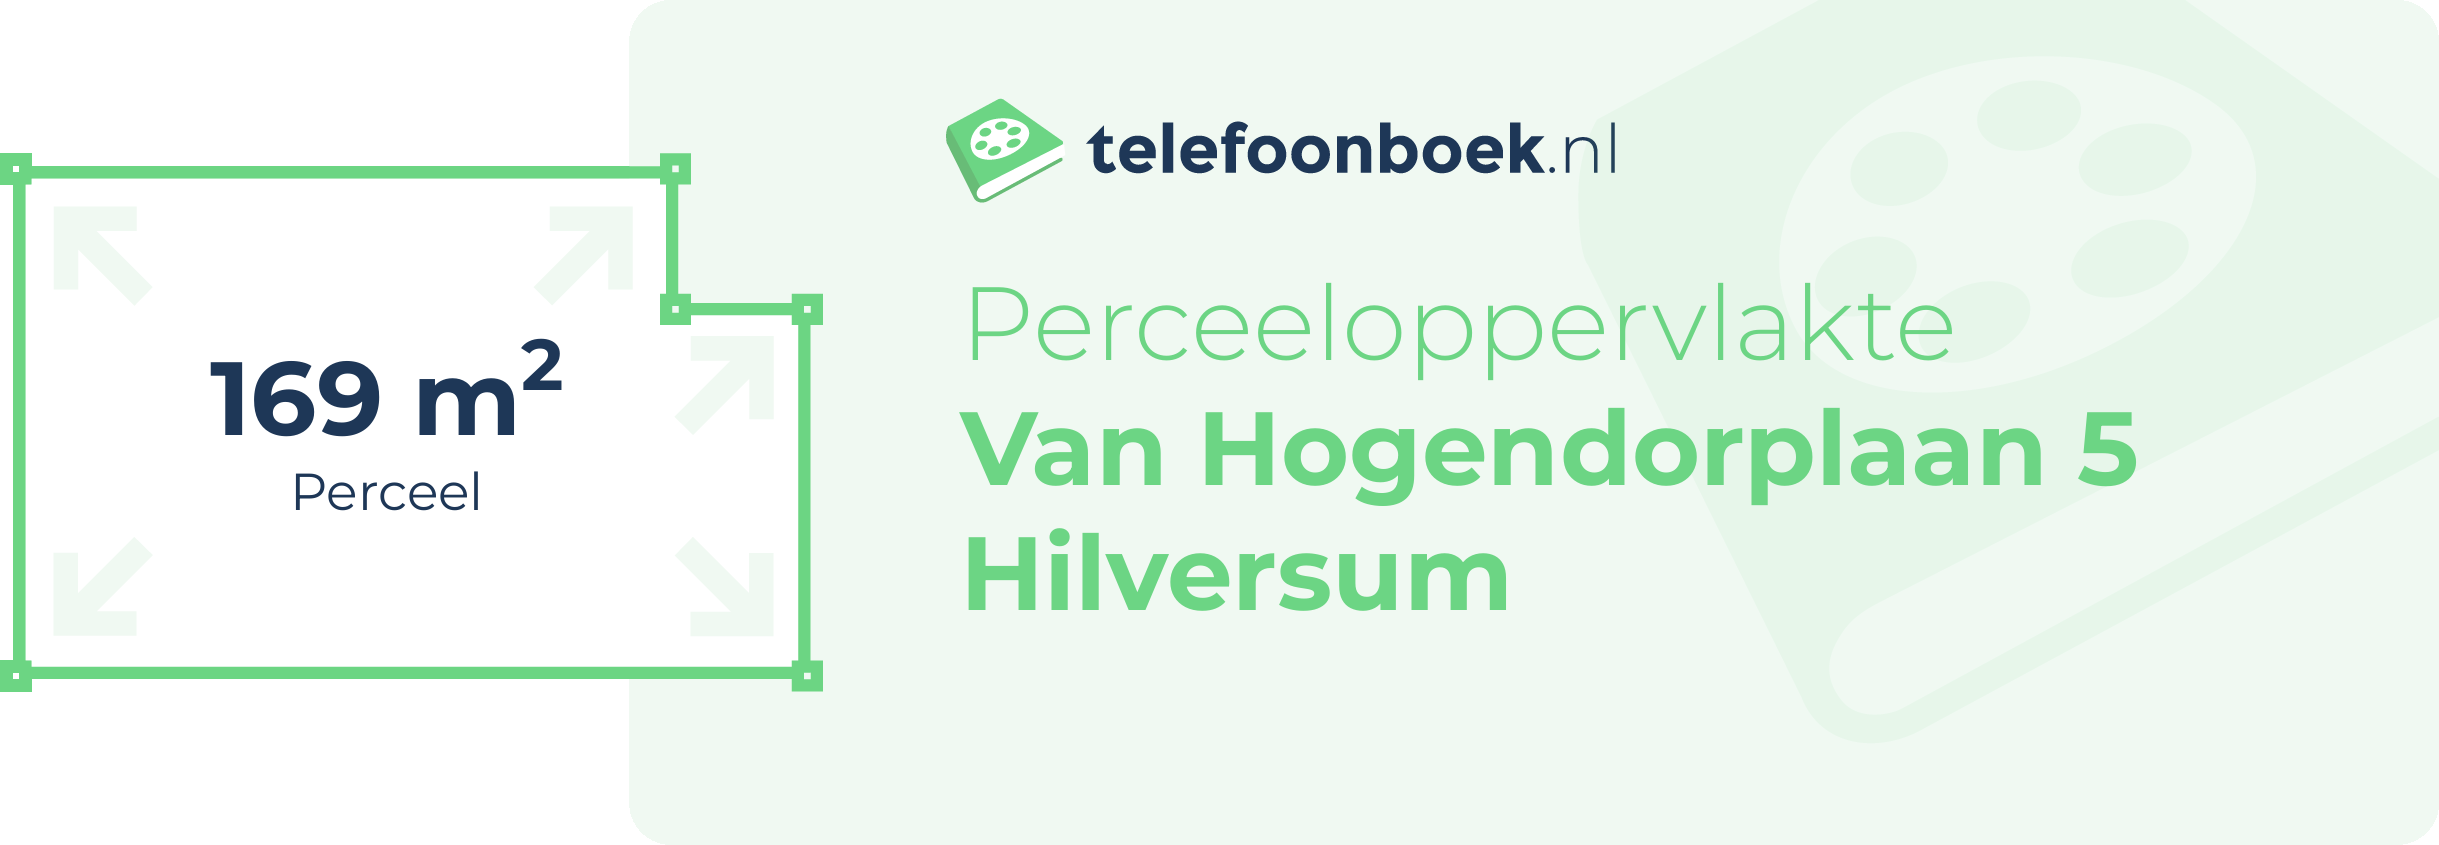 Perceeloppervlakte Van Hogendorplaan 5 Hilversum